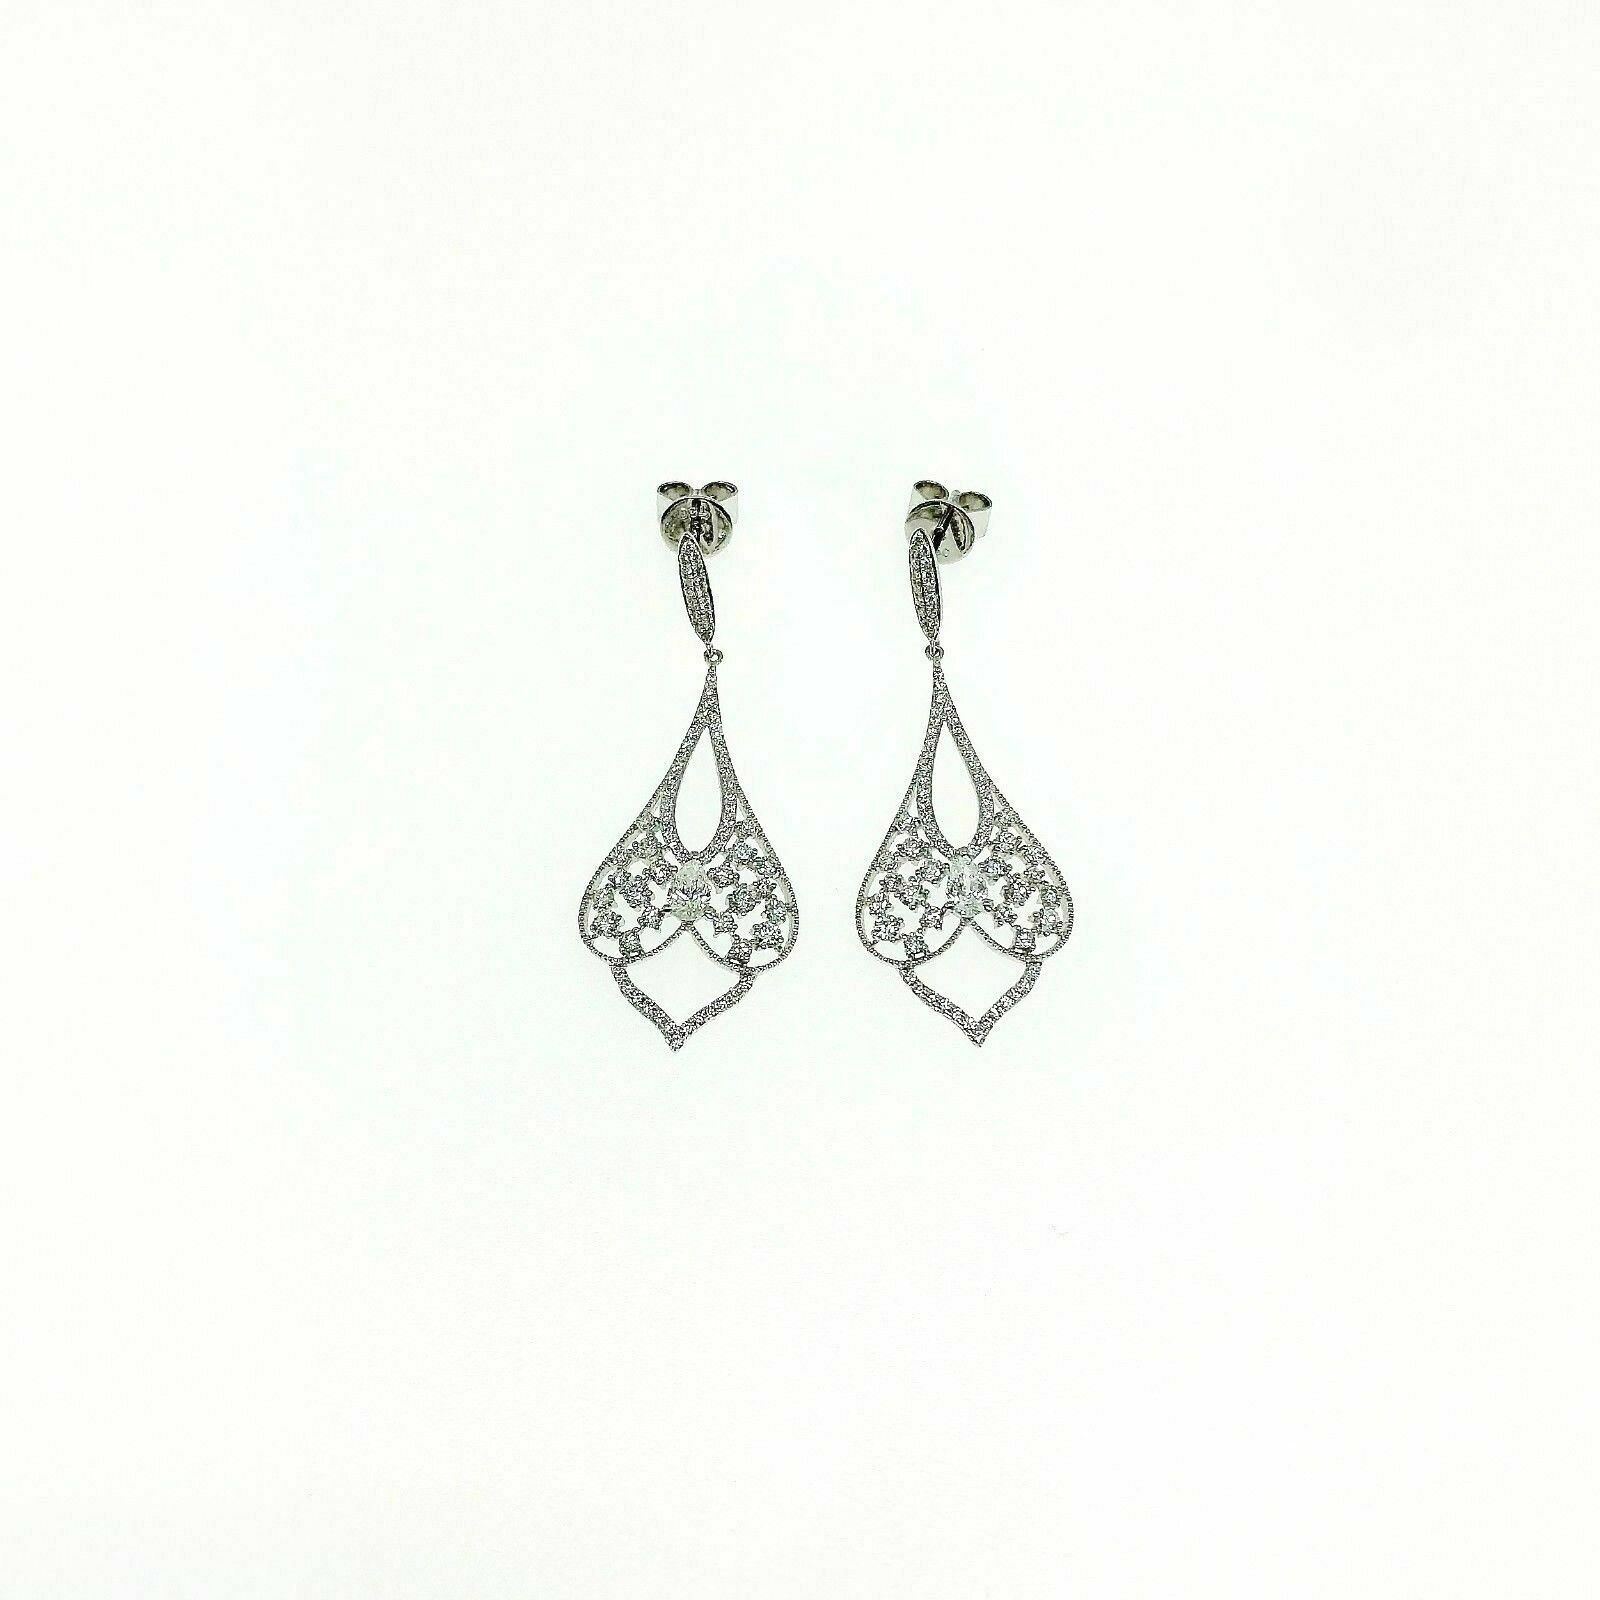 1.53 Carats t.w. Diamond Chandelier Dangle Earrings 18 Karat White Gold